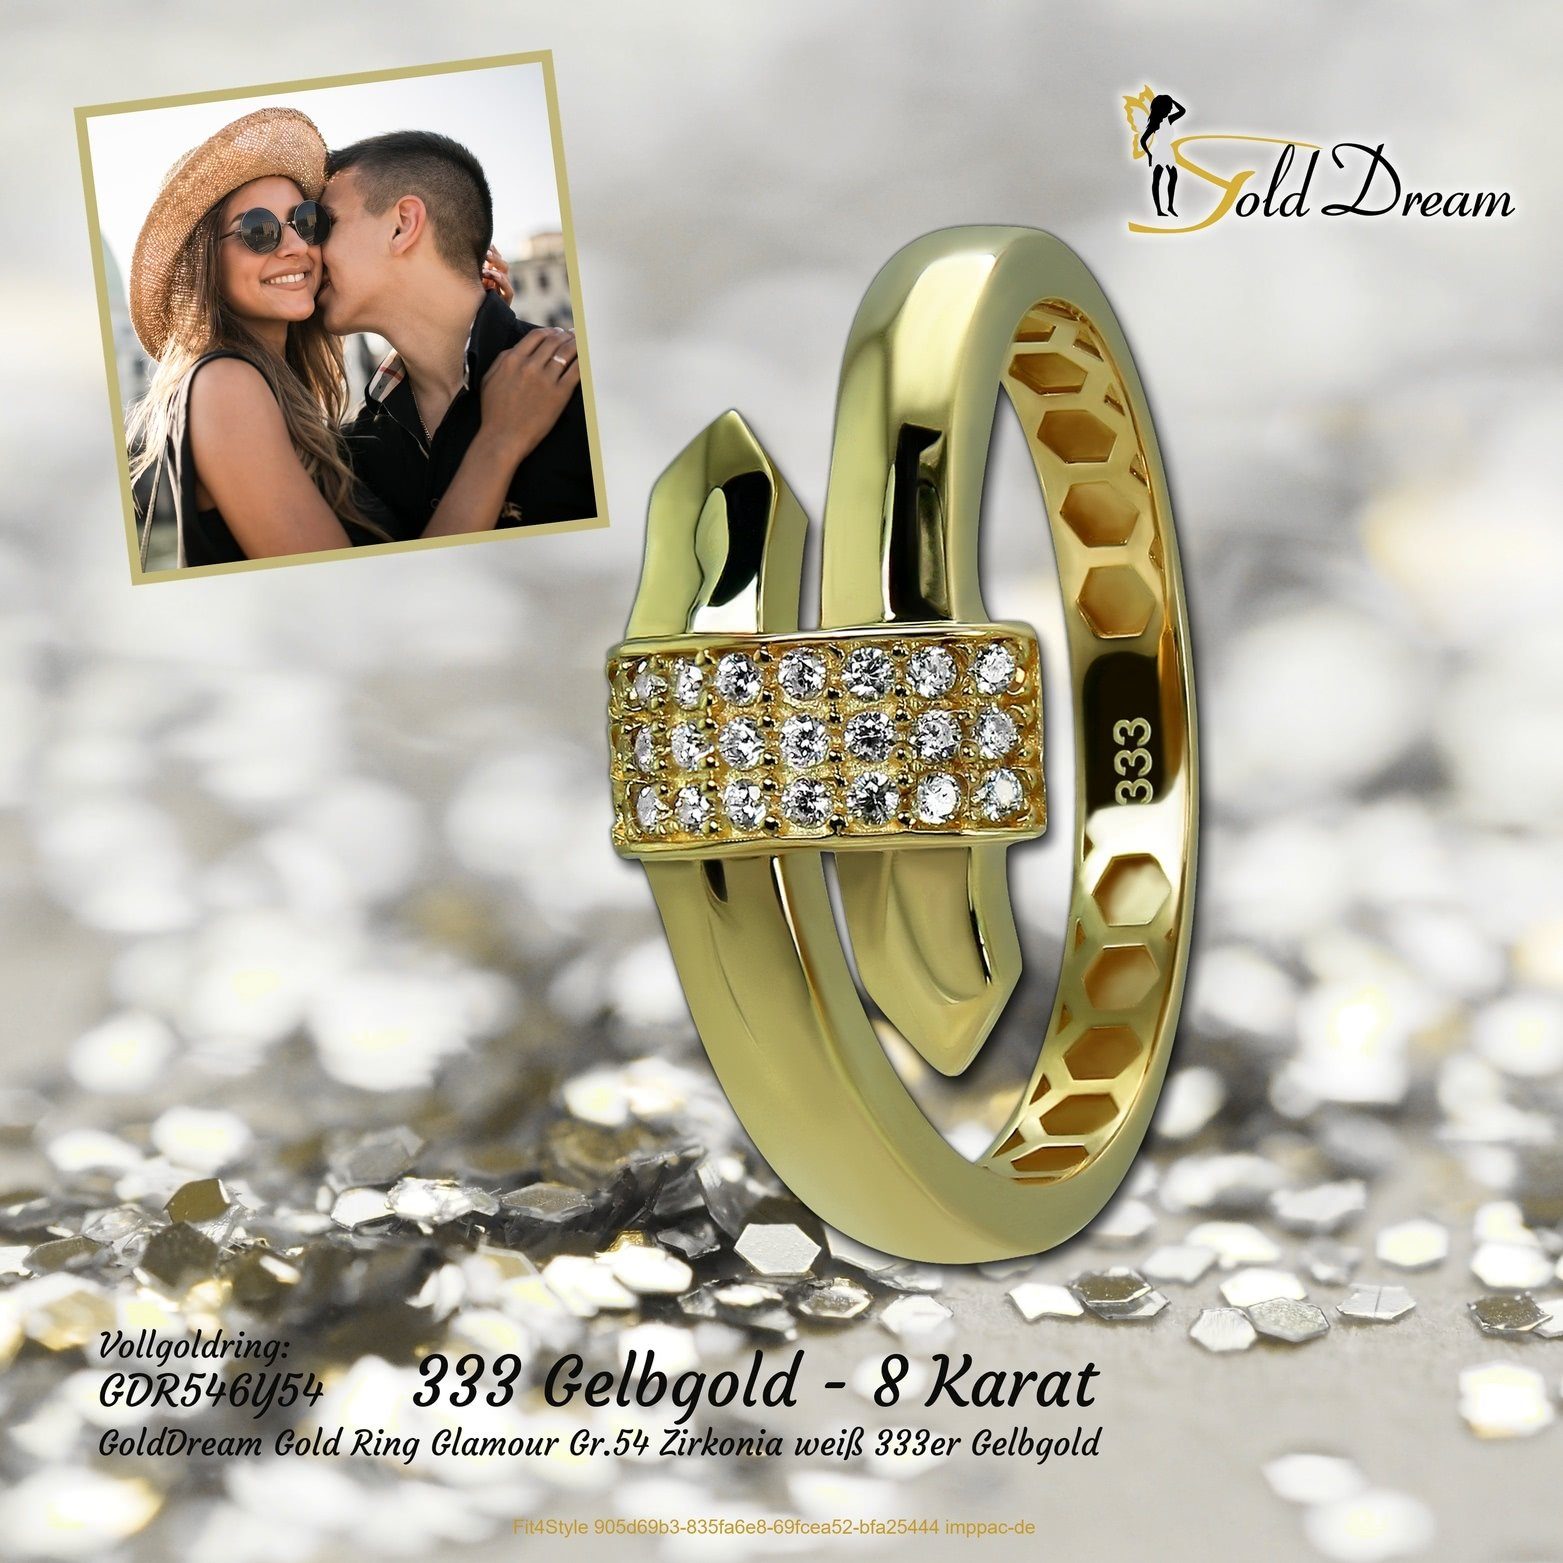 GoldDream Goldring GoldDream Gold Ring Gelbgold Glamour Echtgold, gold, Damen (Fingerring), Gr.54 weiß Ring Glamour 333er